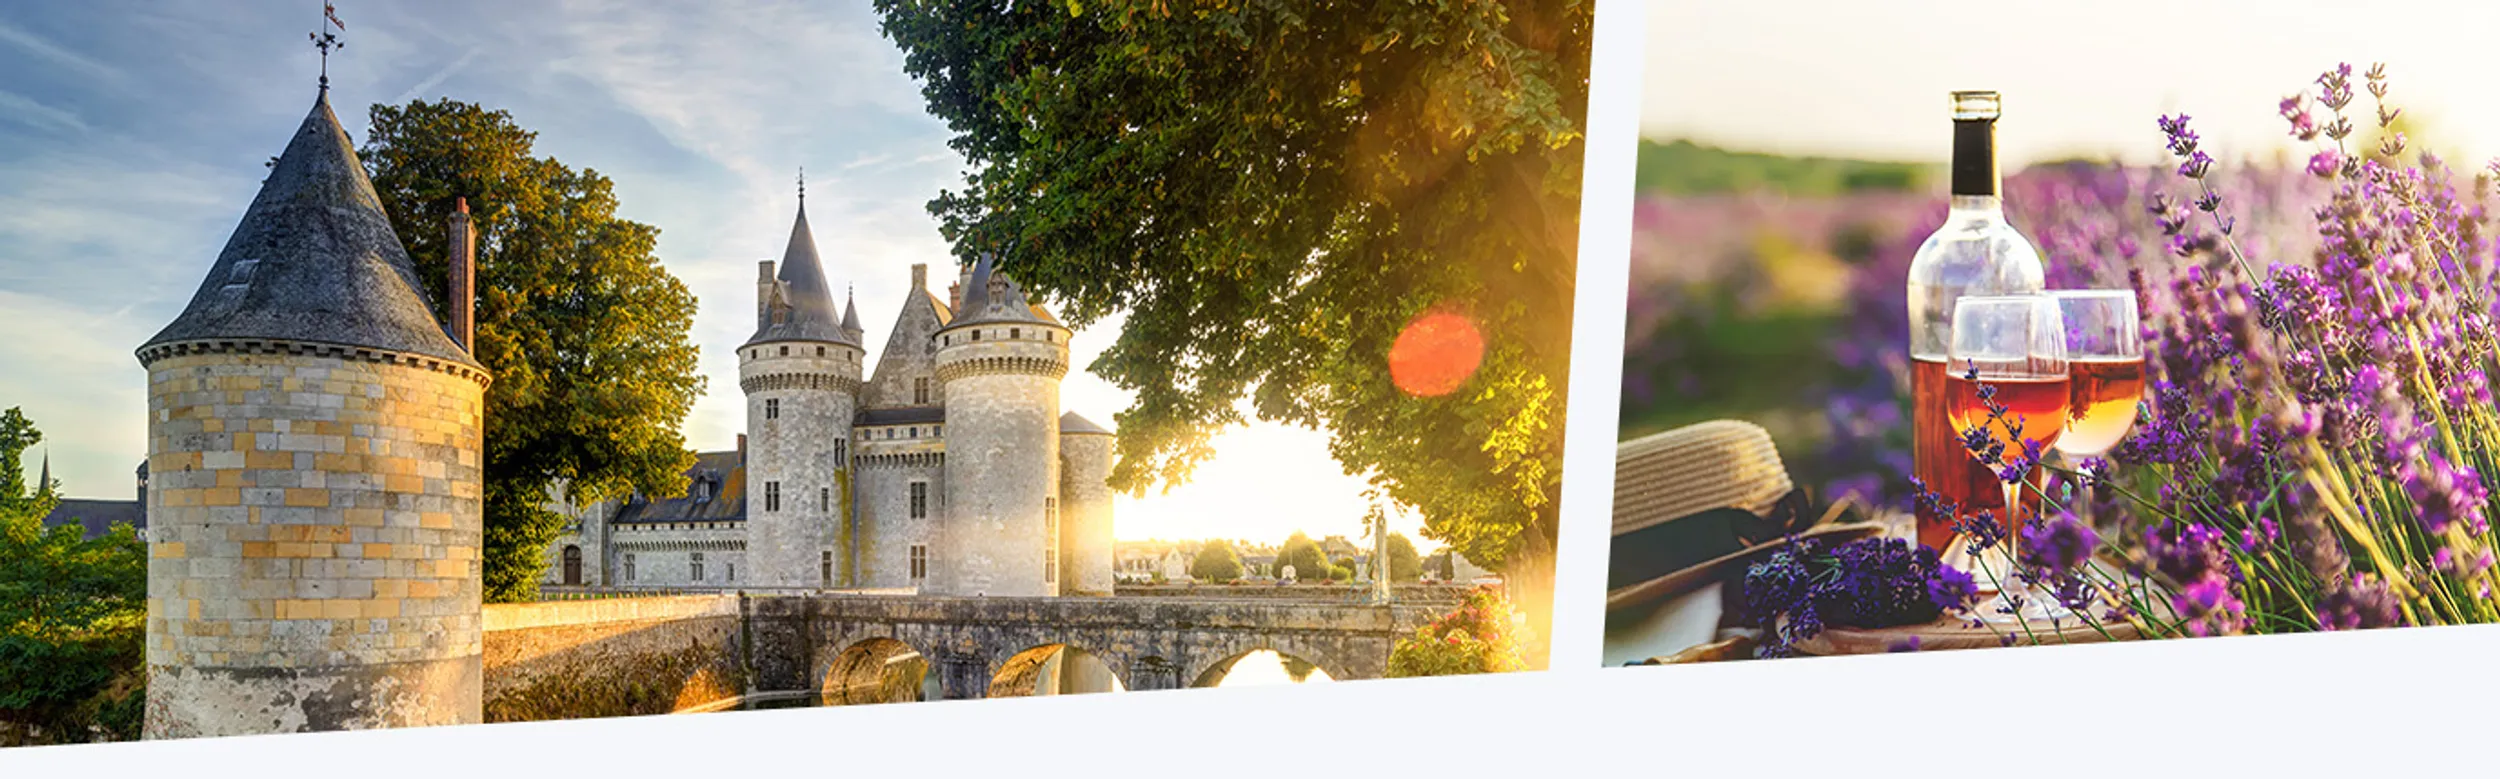 Eine Burganlage und ein Sonnenaufgang über Lavendelfeldern in der französischen Provence